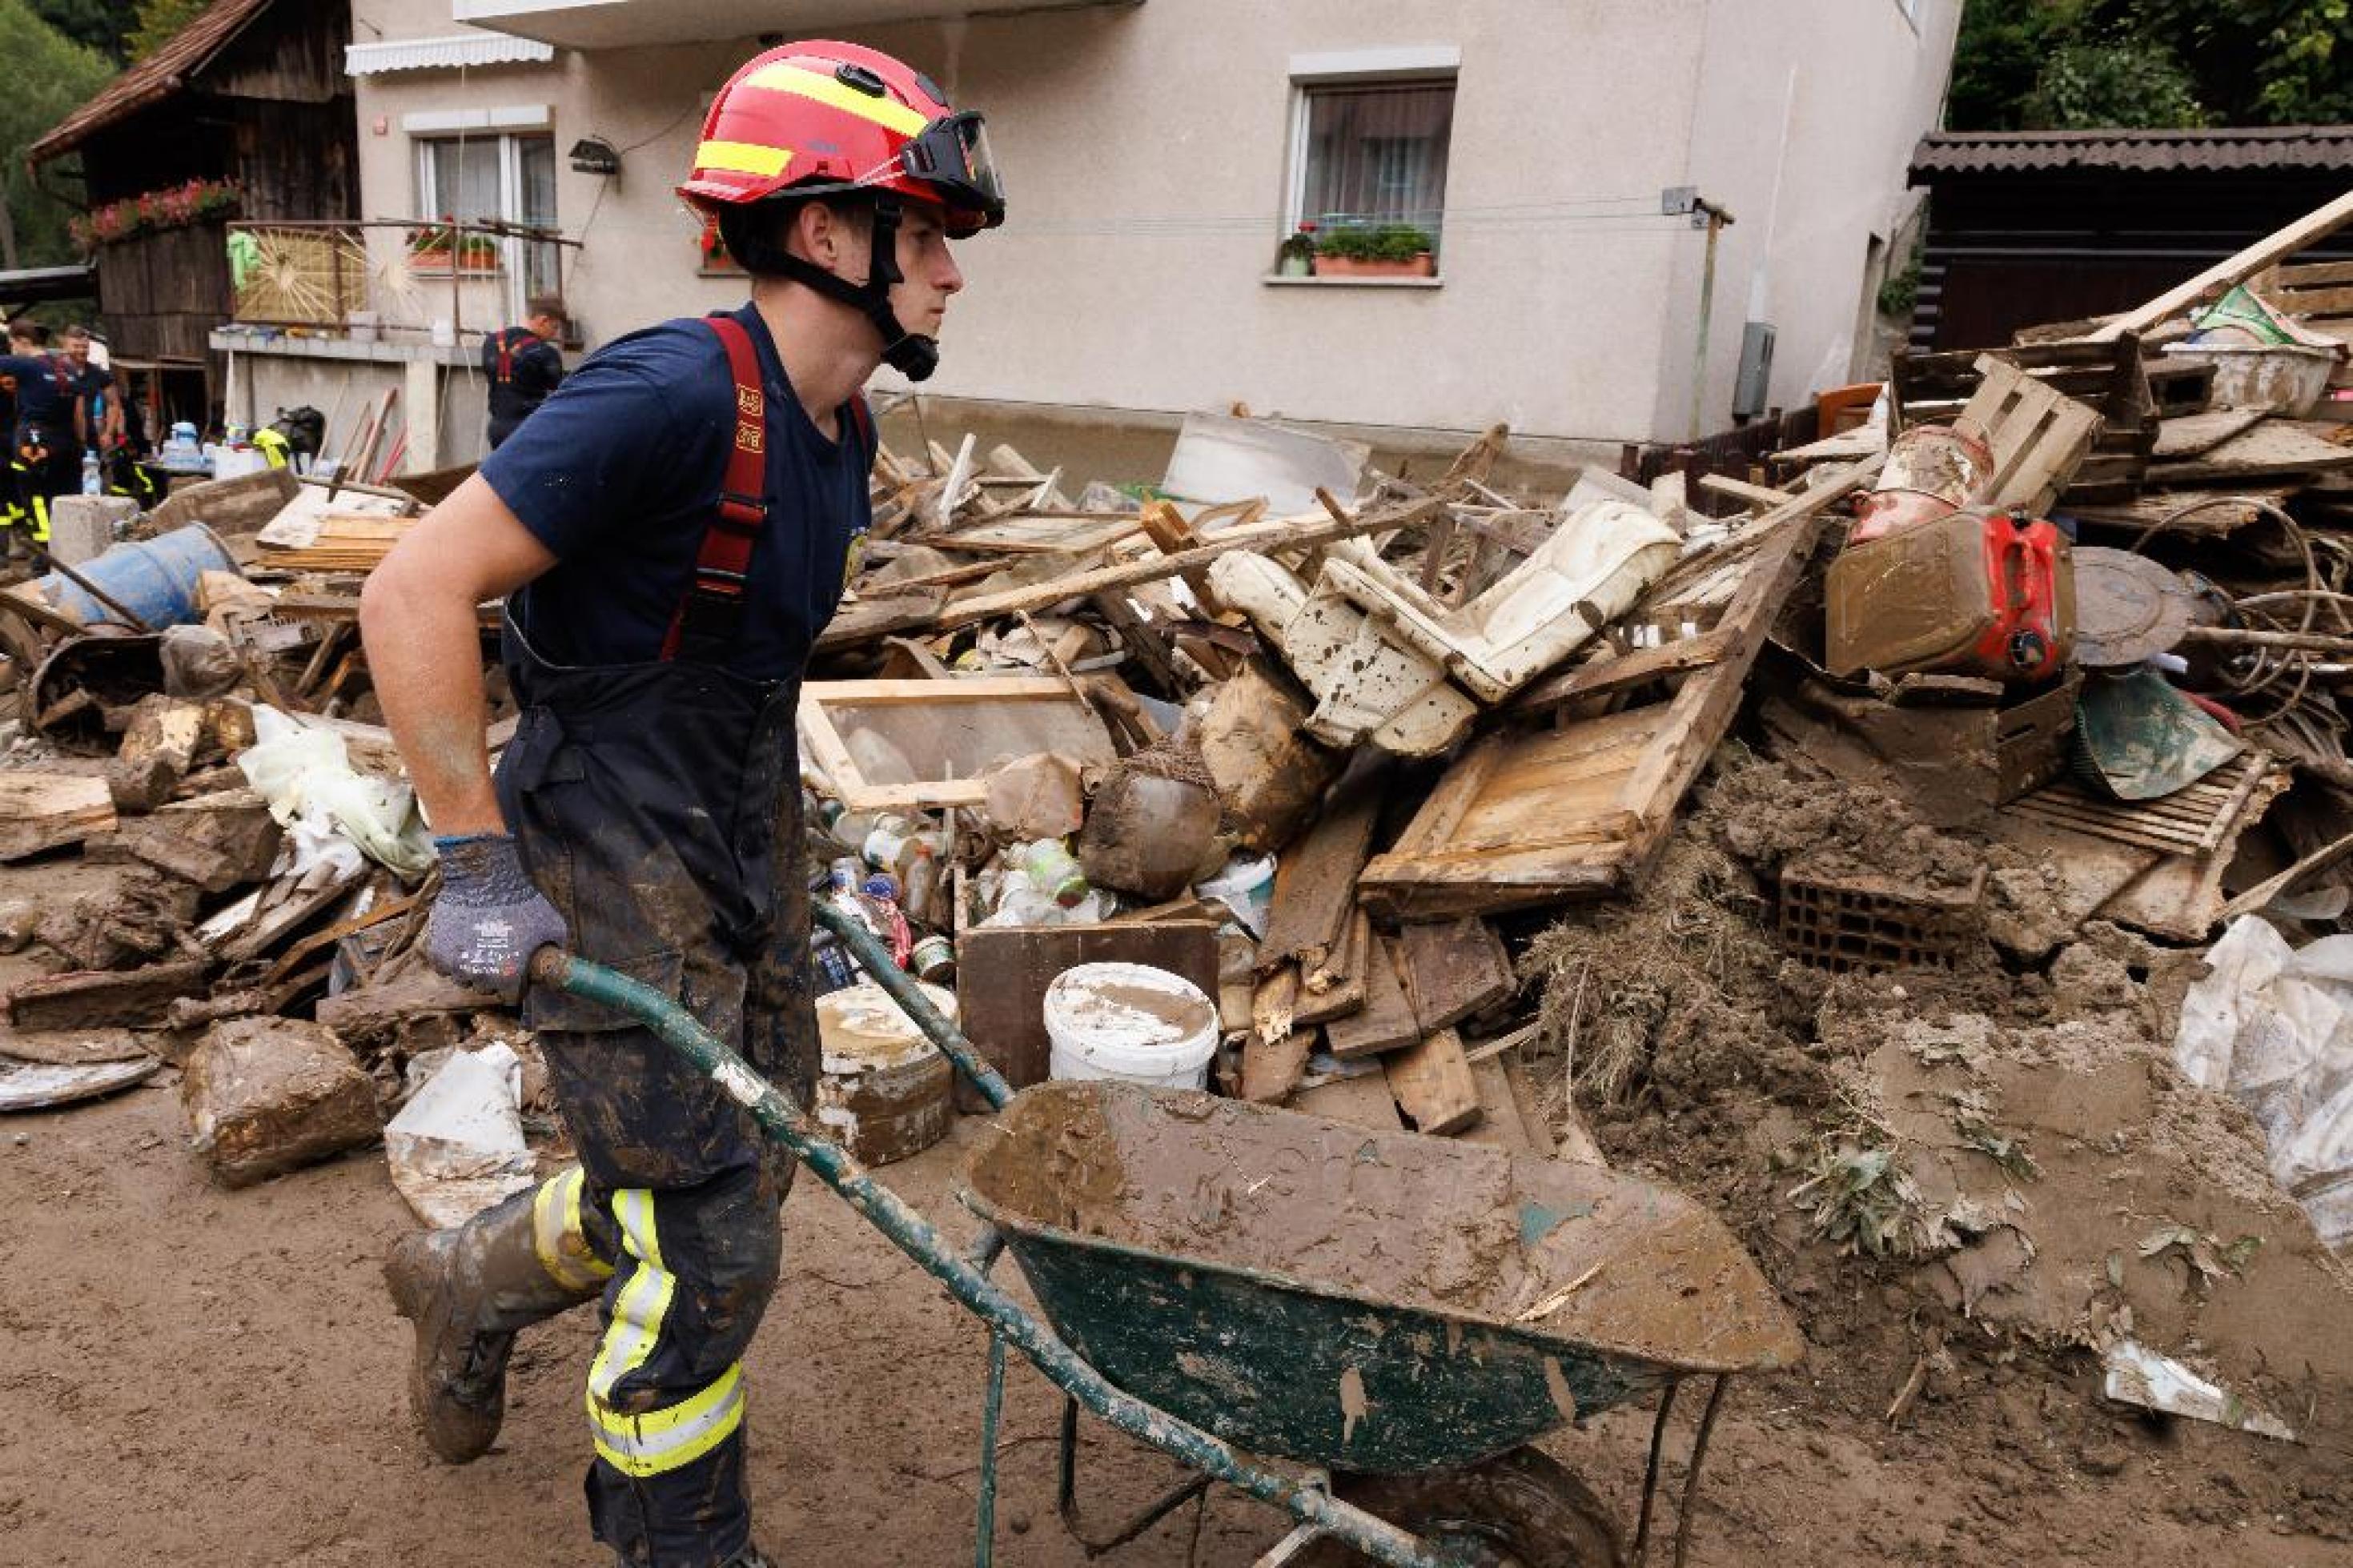 Ein junger Feuerwehrmann schiebt eine Schubkarre neben einem großen Haufen von zerstörtem Hausrat. Die Straße und der Müllberg sind von Schlamm überzogen.